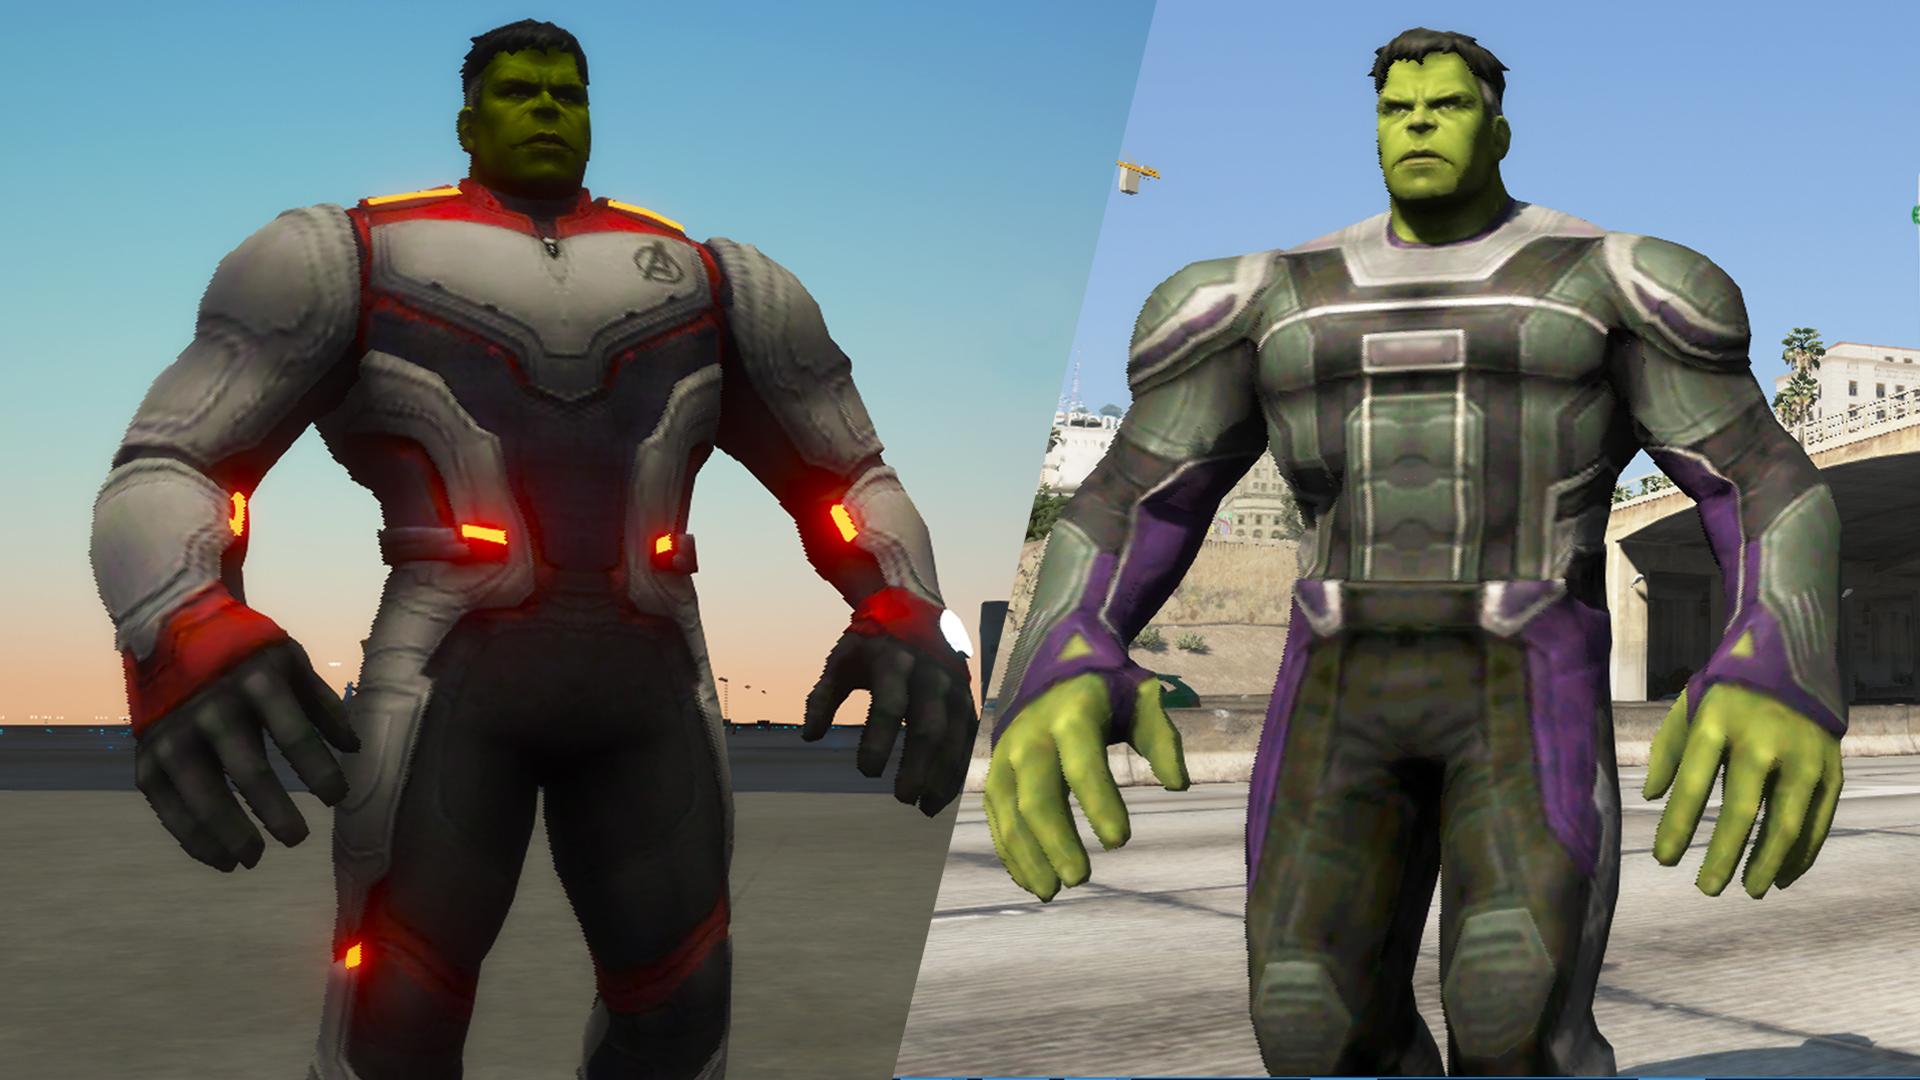 Гта мод на халка. Халк Мстители финал. Hulk Avengers. Мод на Халка. Халк из Мстителей финал.